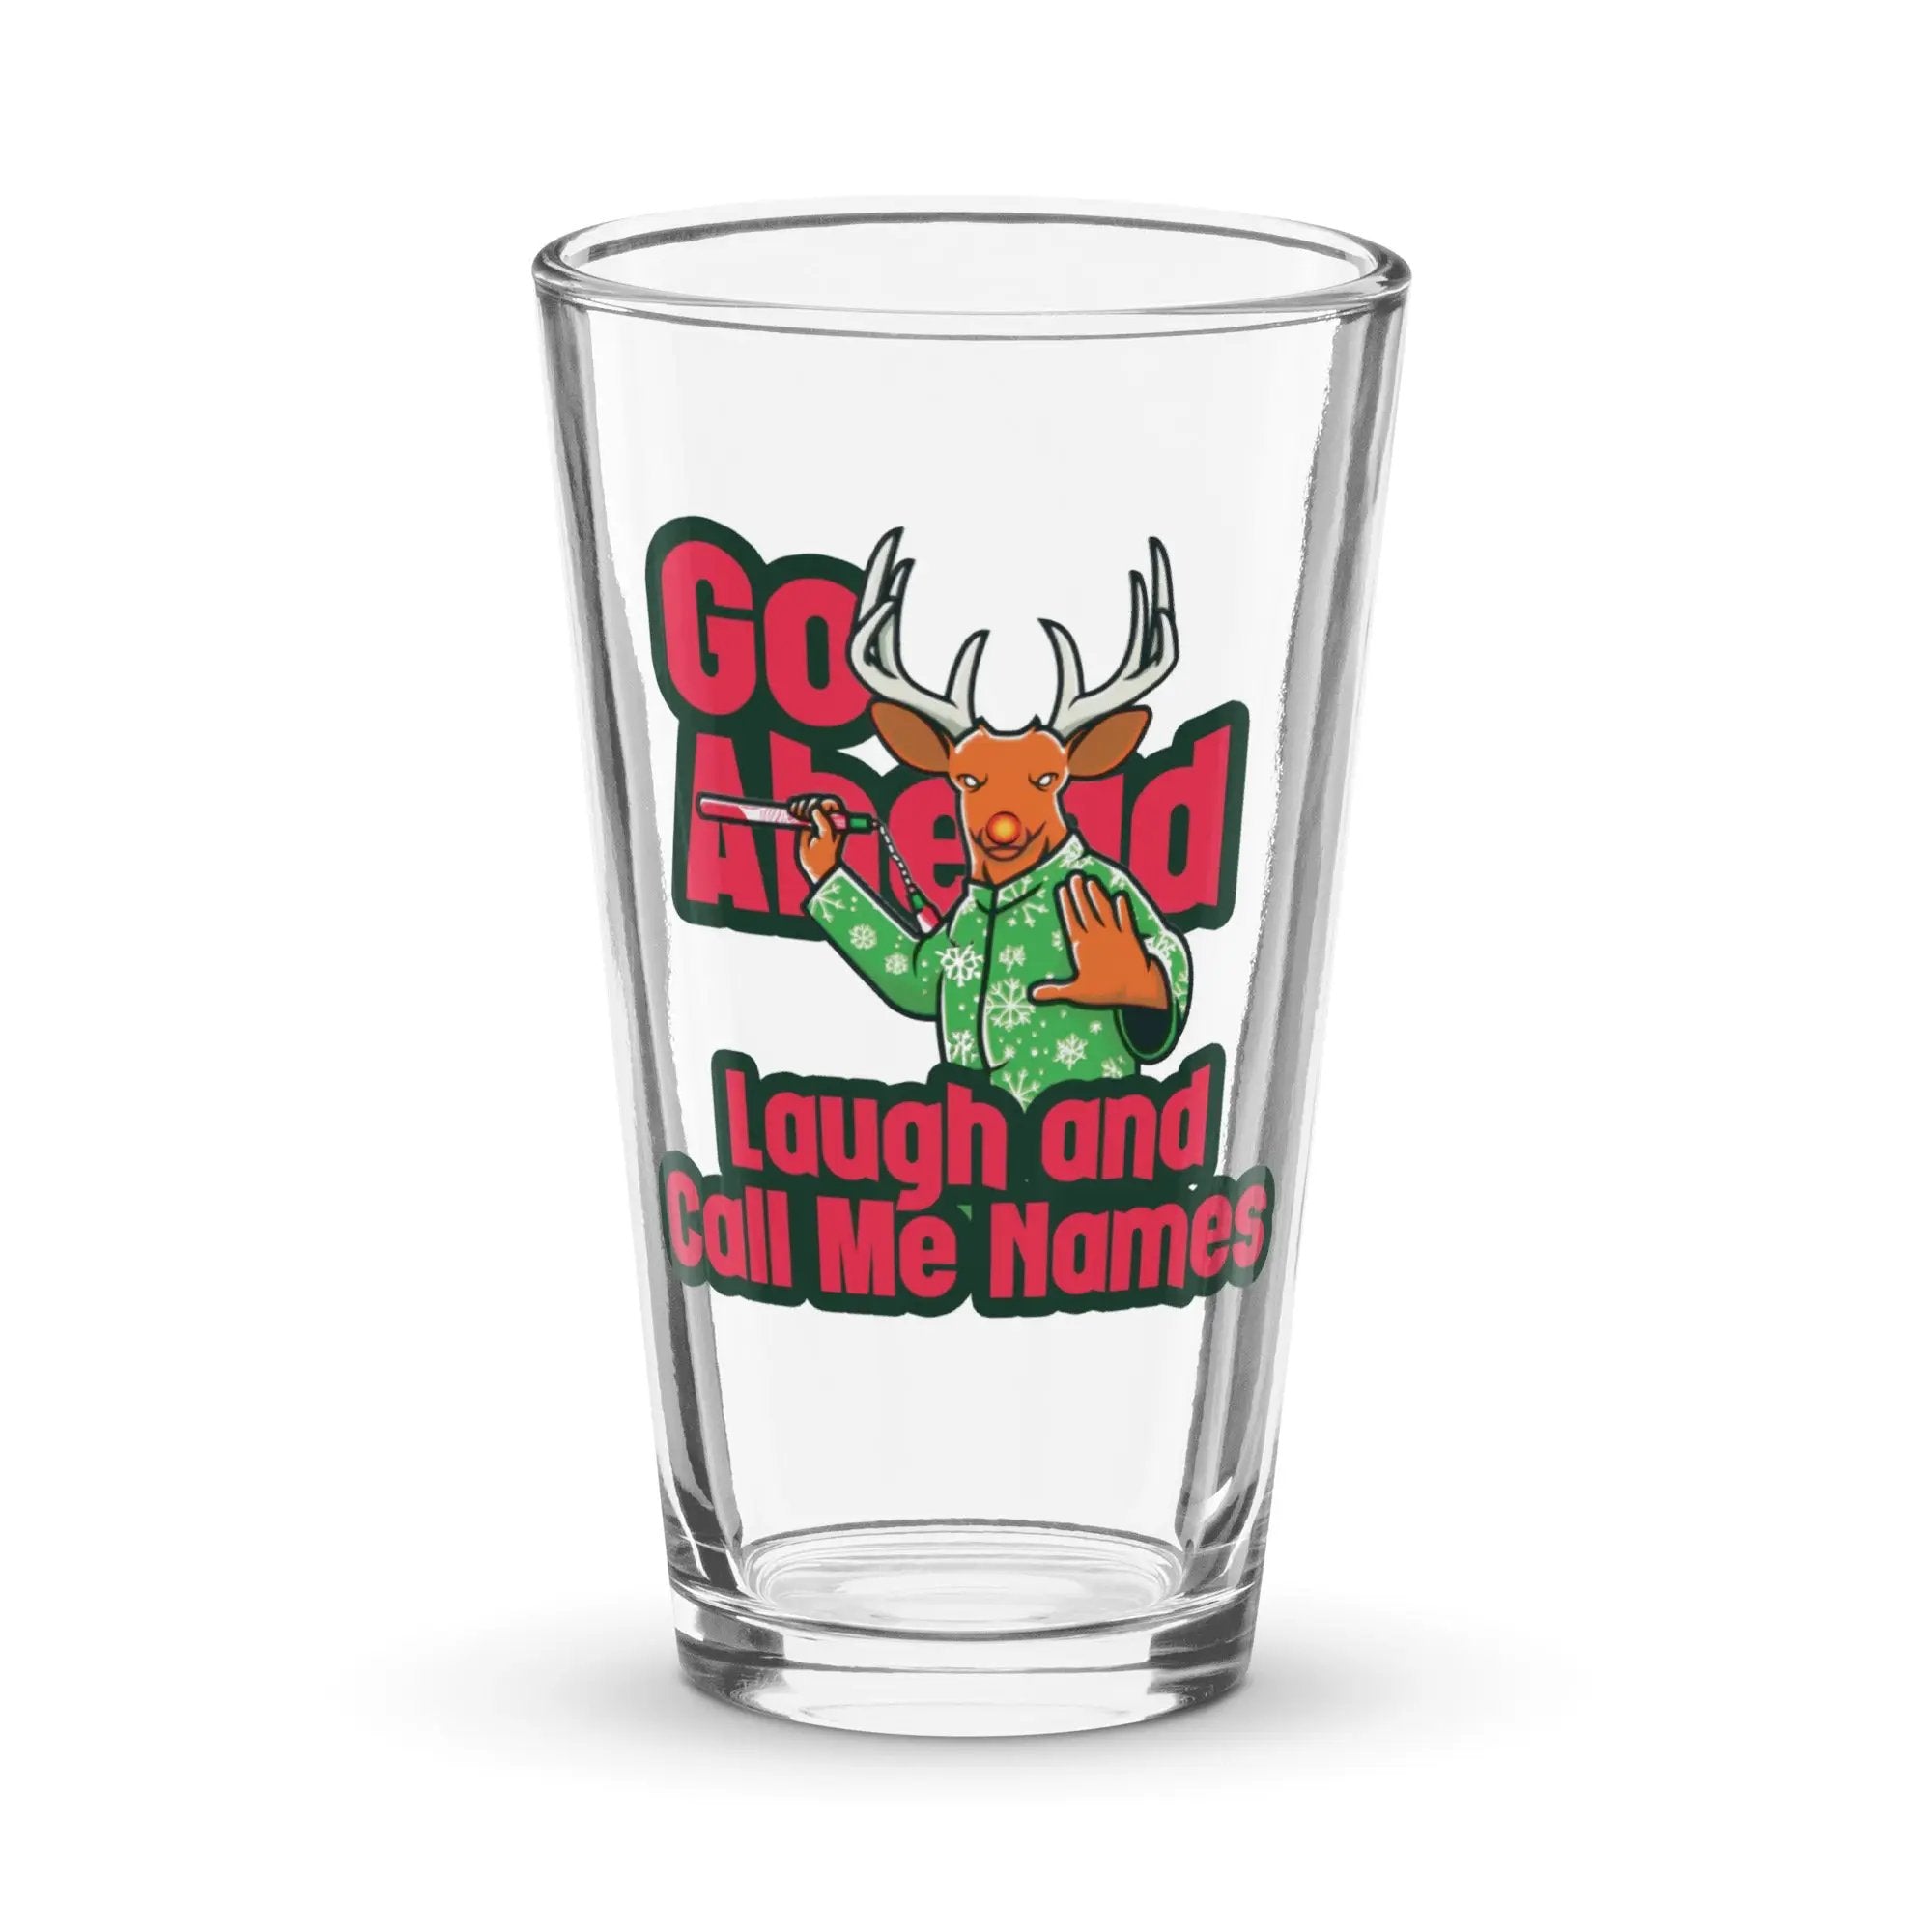 Rudolph's Revenge Shaker pint glass